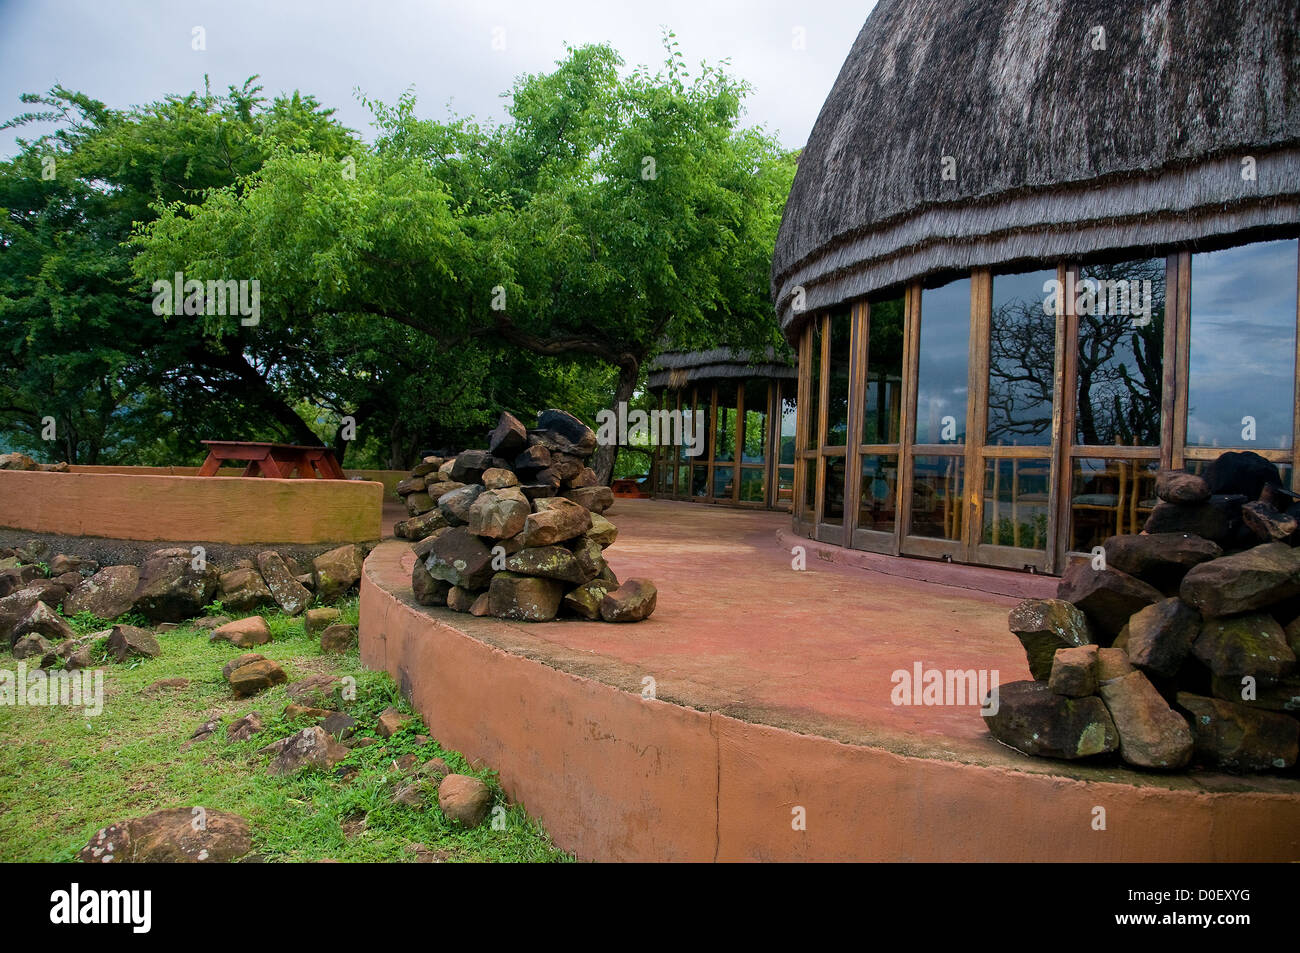 Les visiteurs de Shakaland au KwaZulu Natal, Afrique du Sud devraient profiter de l'intéressante et centre de villégiature en expliquant leur culture. Banque D'Images